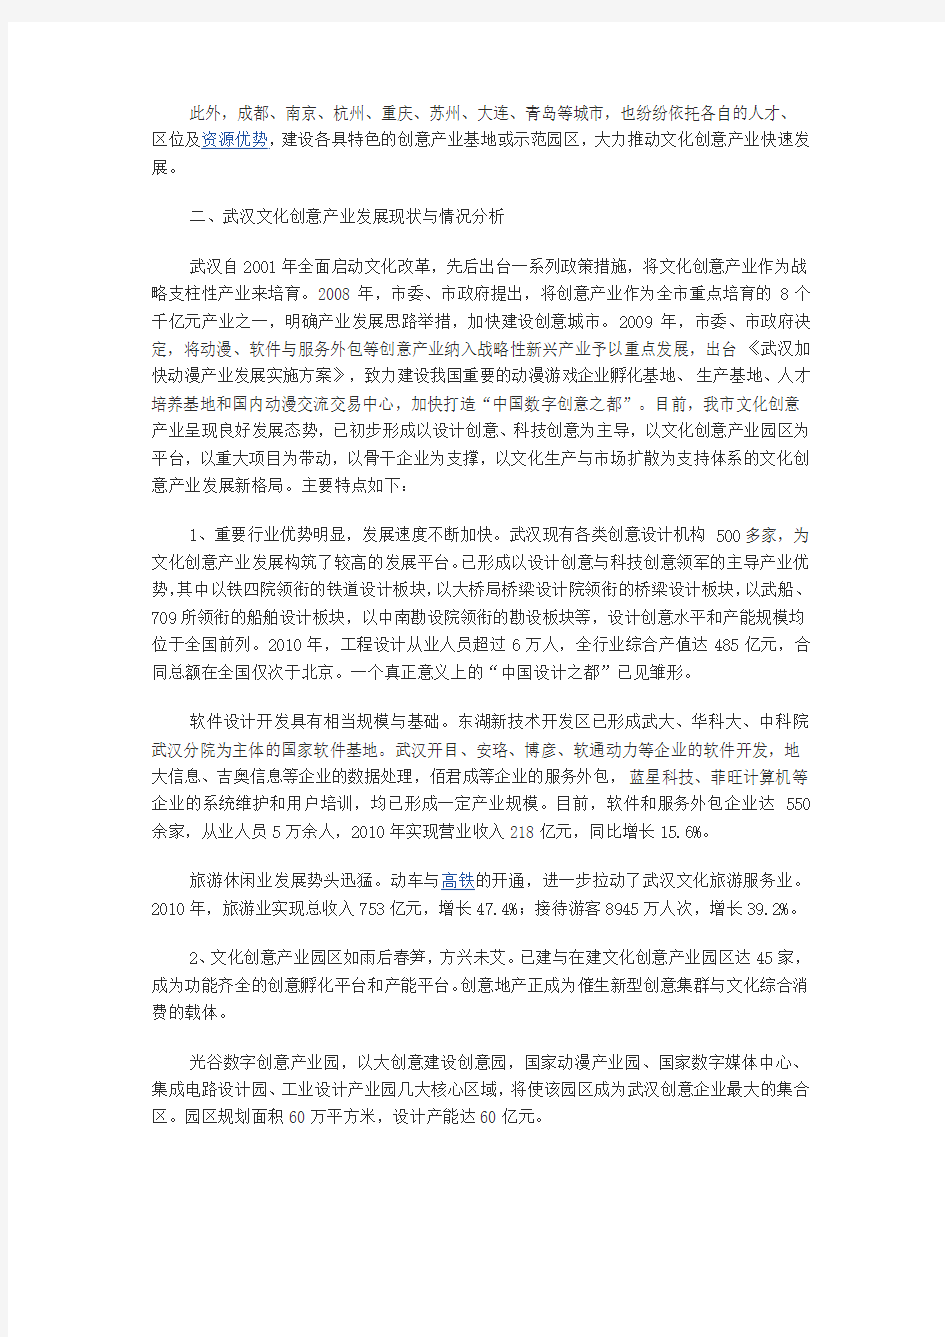 武汉文化创意产业调查报告